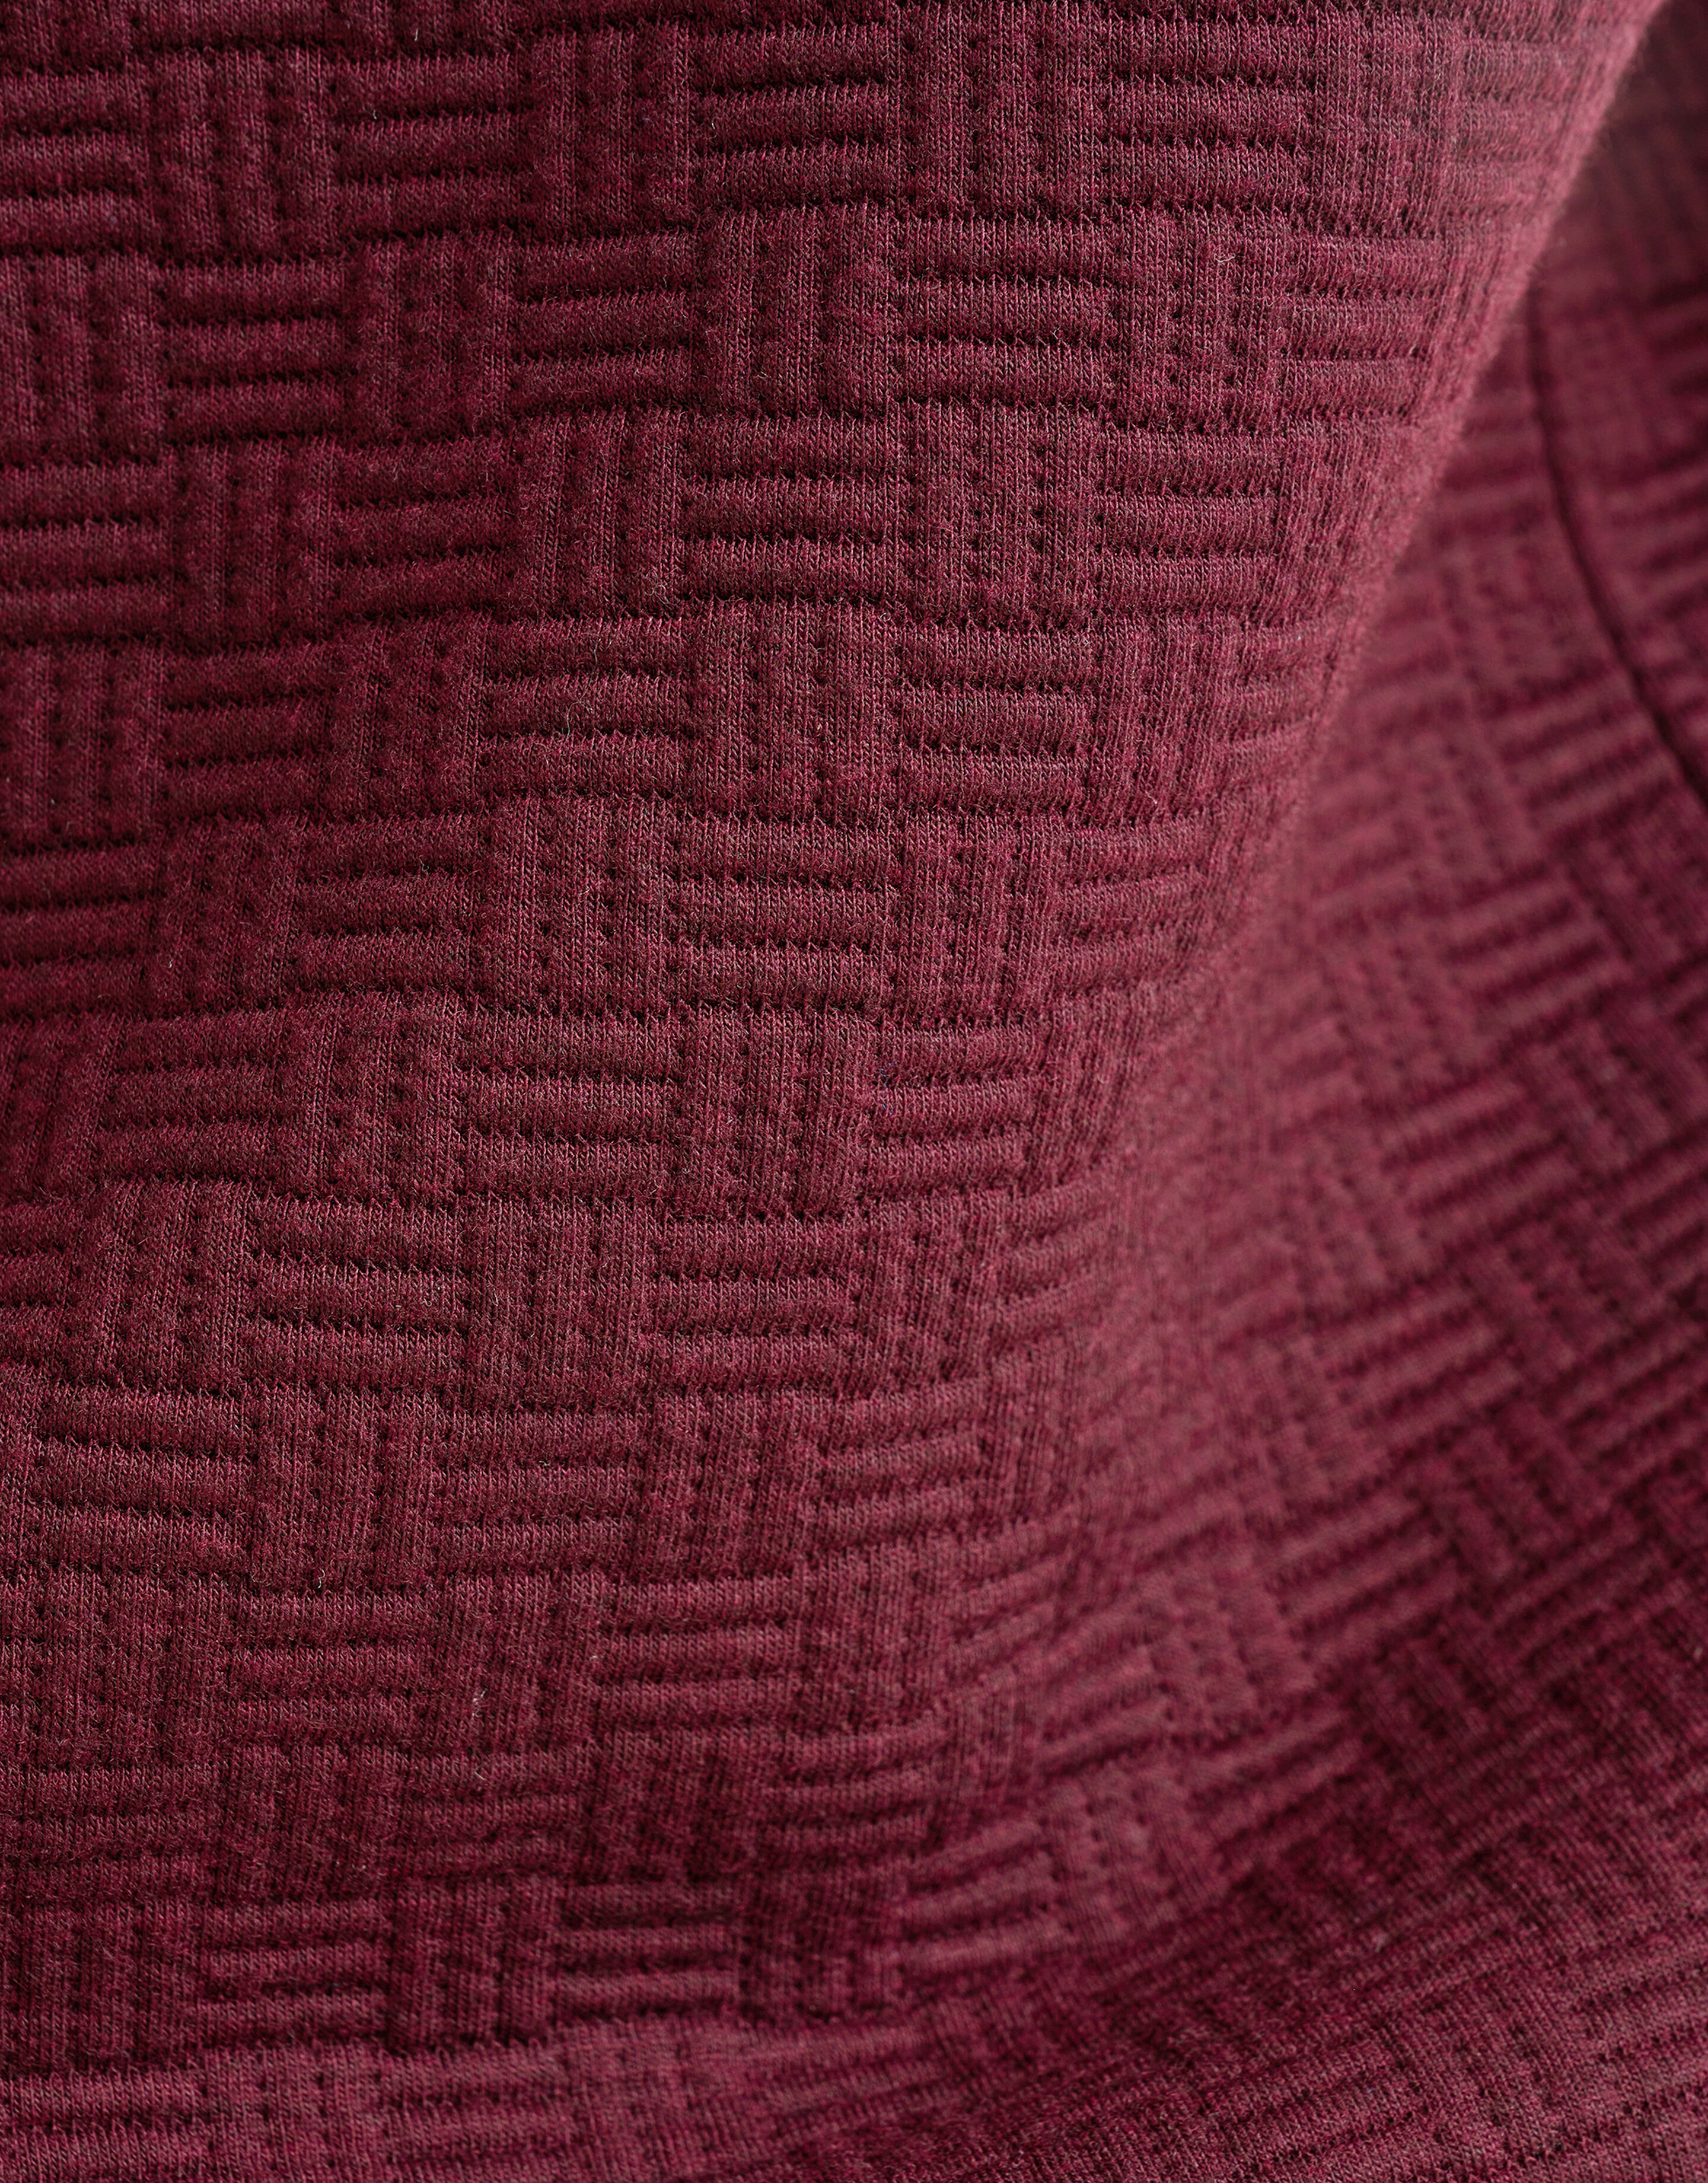 Half Zip Quilted Structuur Sweater Bordeaux SHOEBY MEN